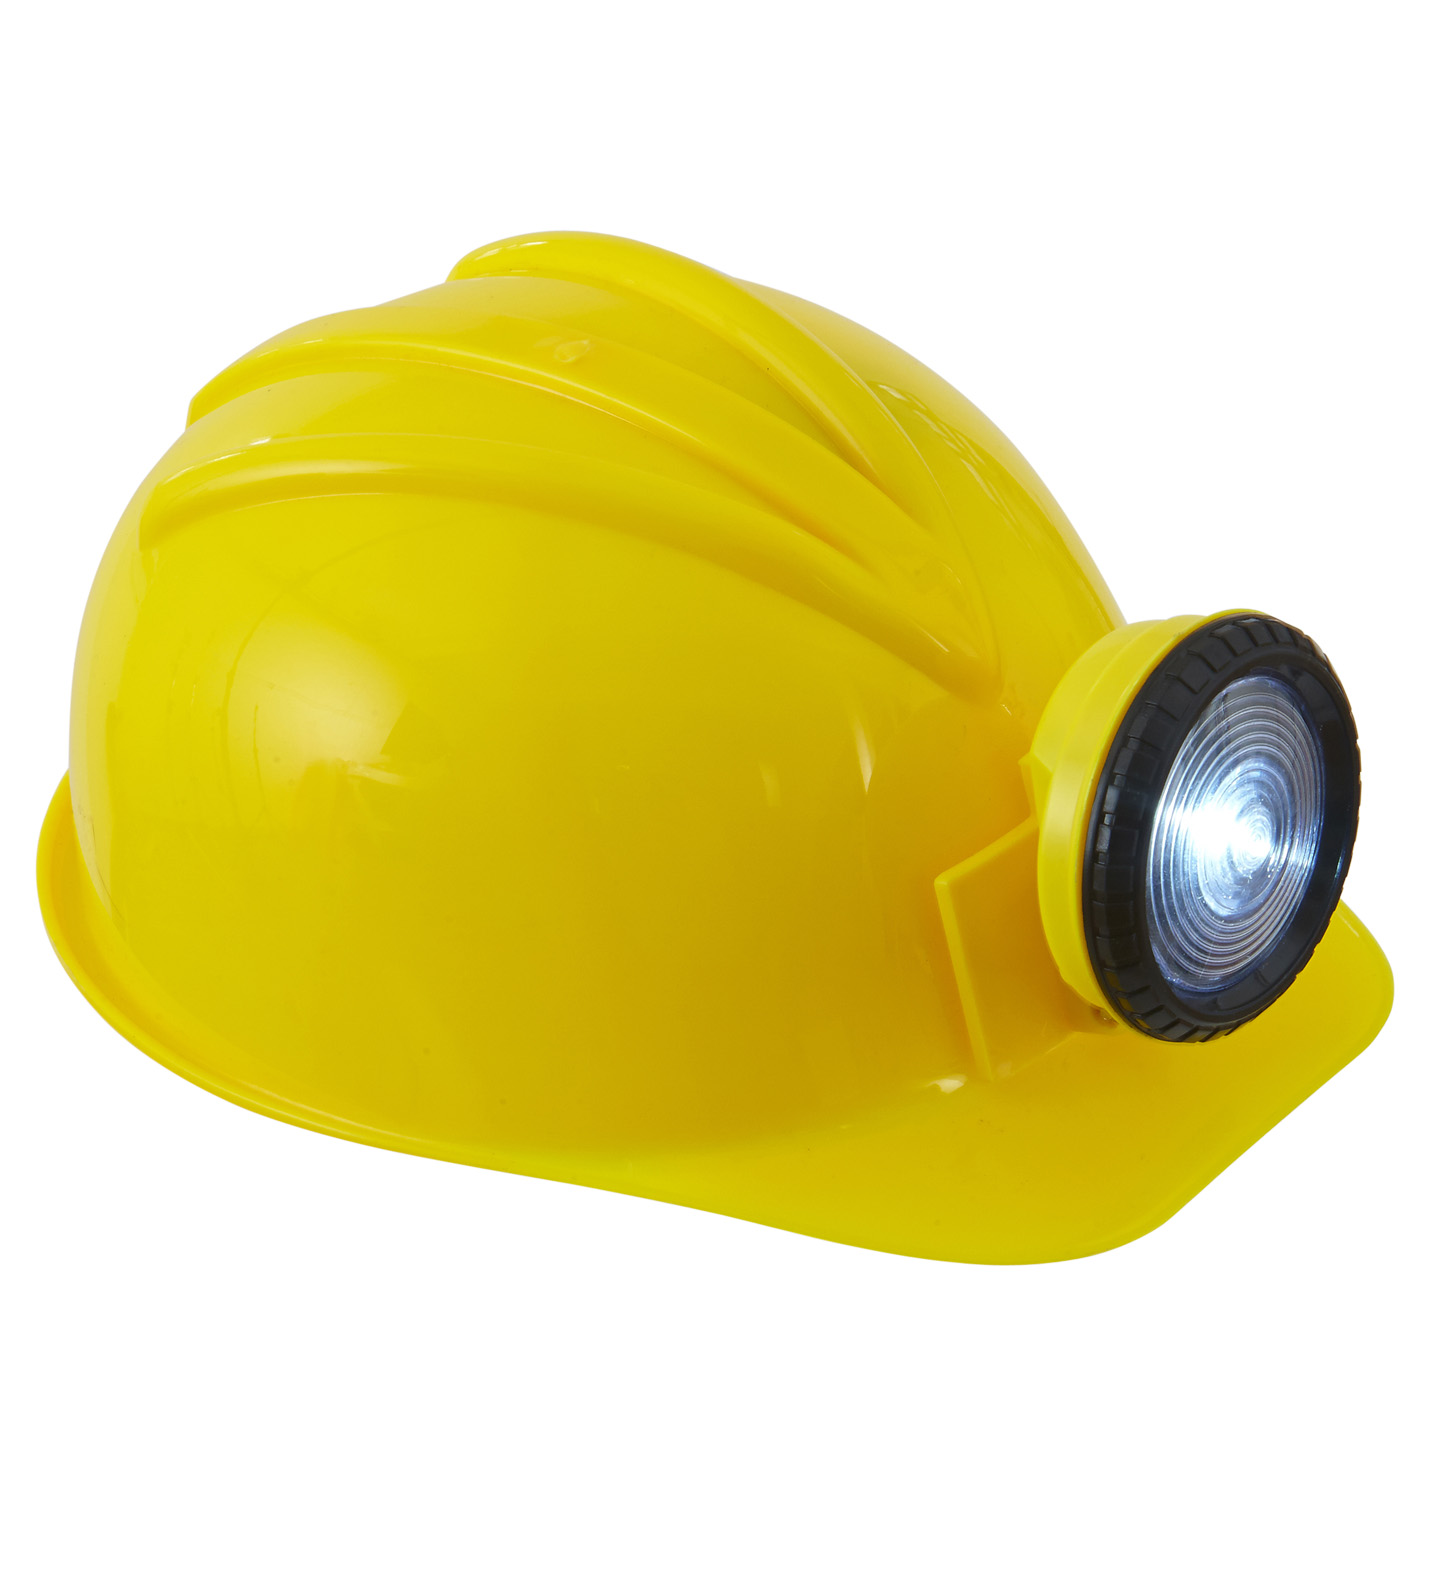 Alte Bauarbeiter tragen gelbe Helm Anordnen von fluoreszierenden